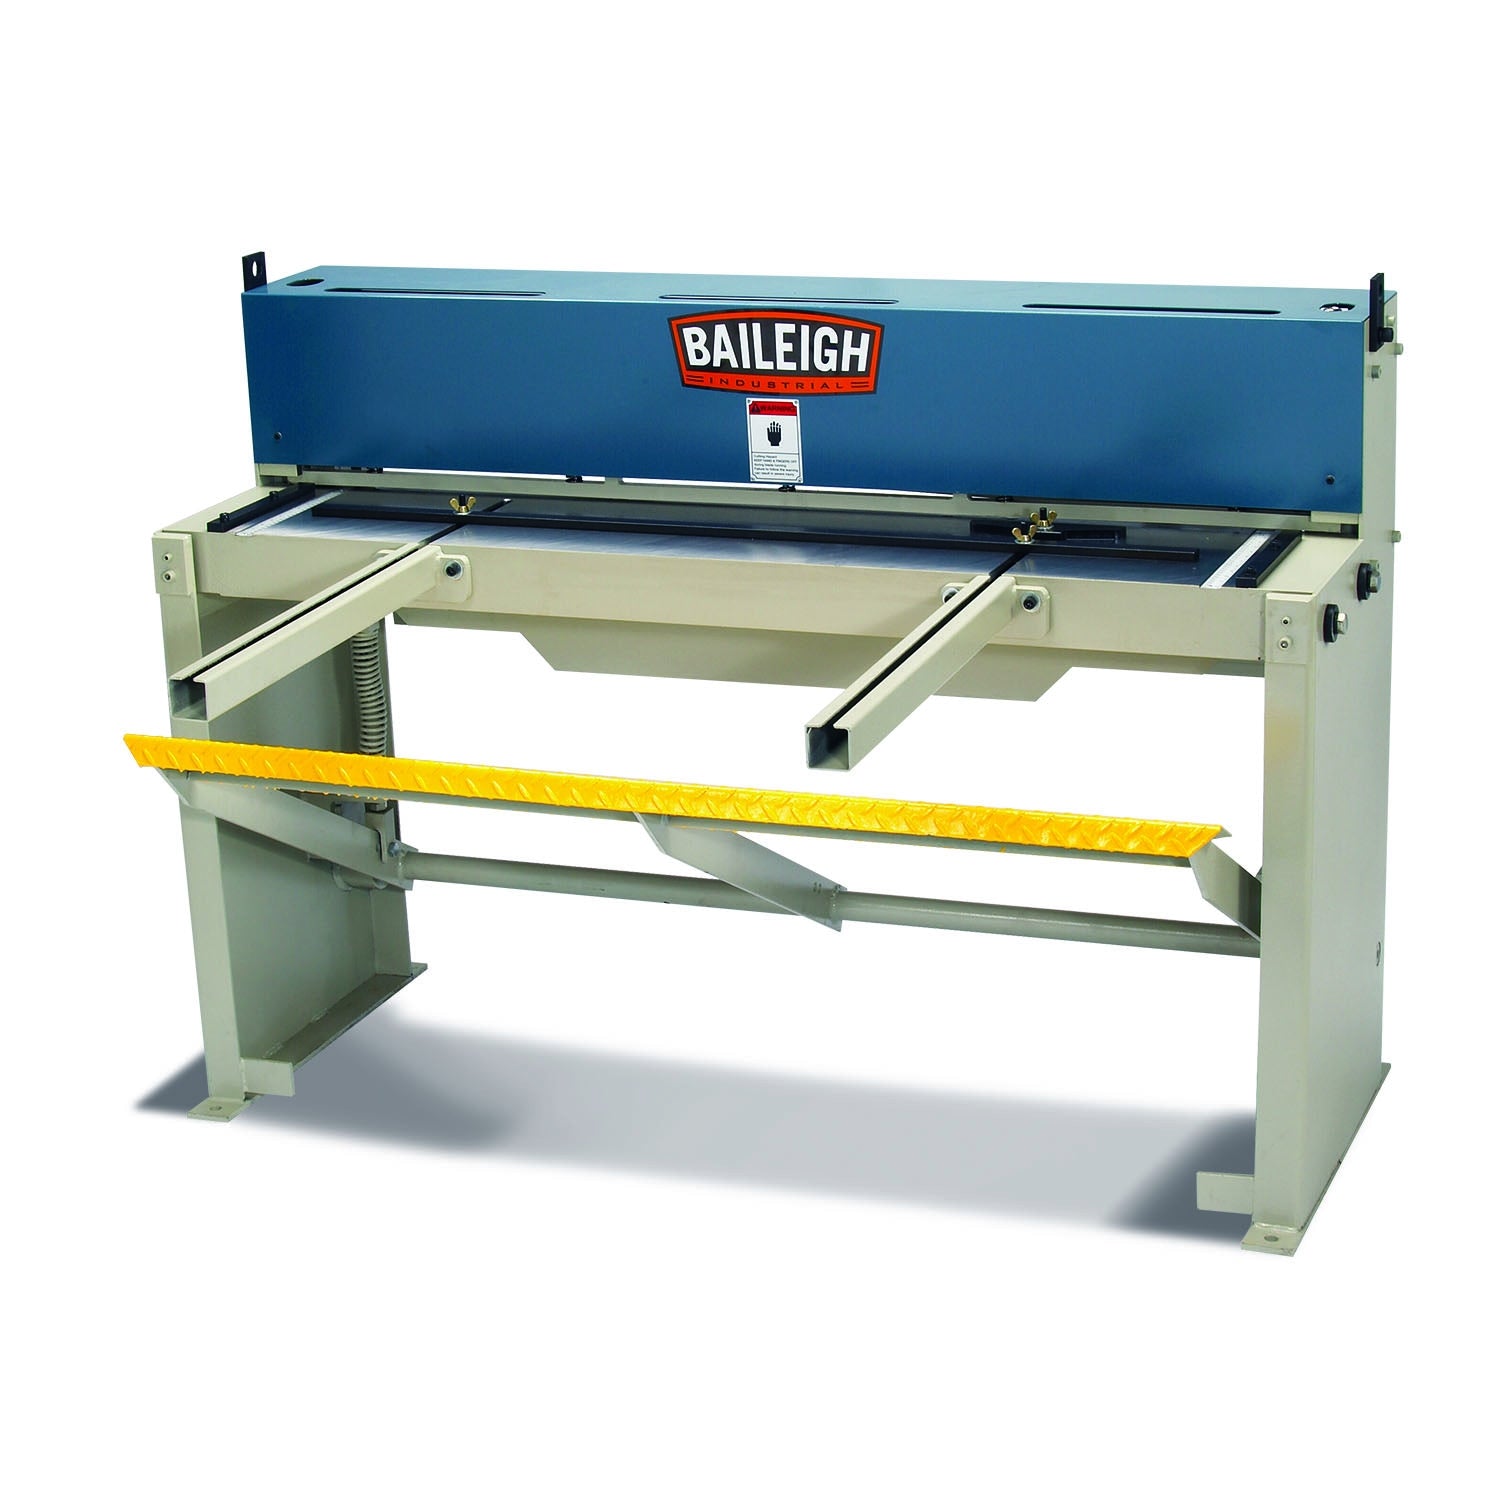 Baileigh SF-5216 Heavy Duty Foot (Stomp) Shear, 52" Length, 16 Gauge Mild Steel Capacity